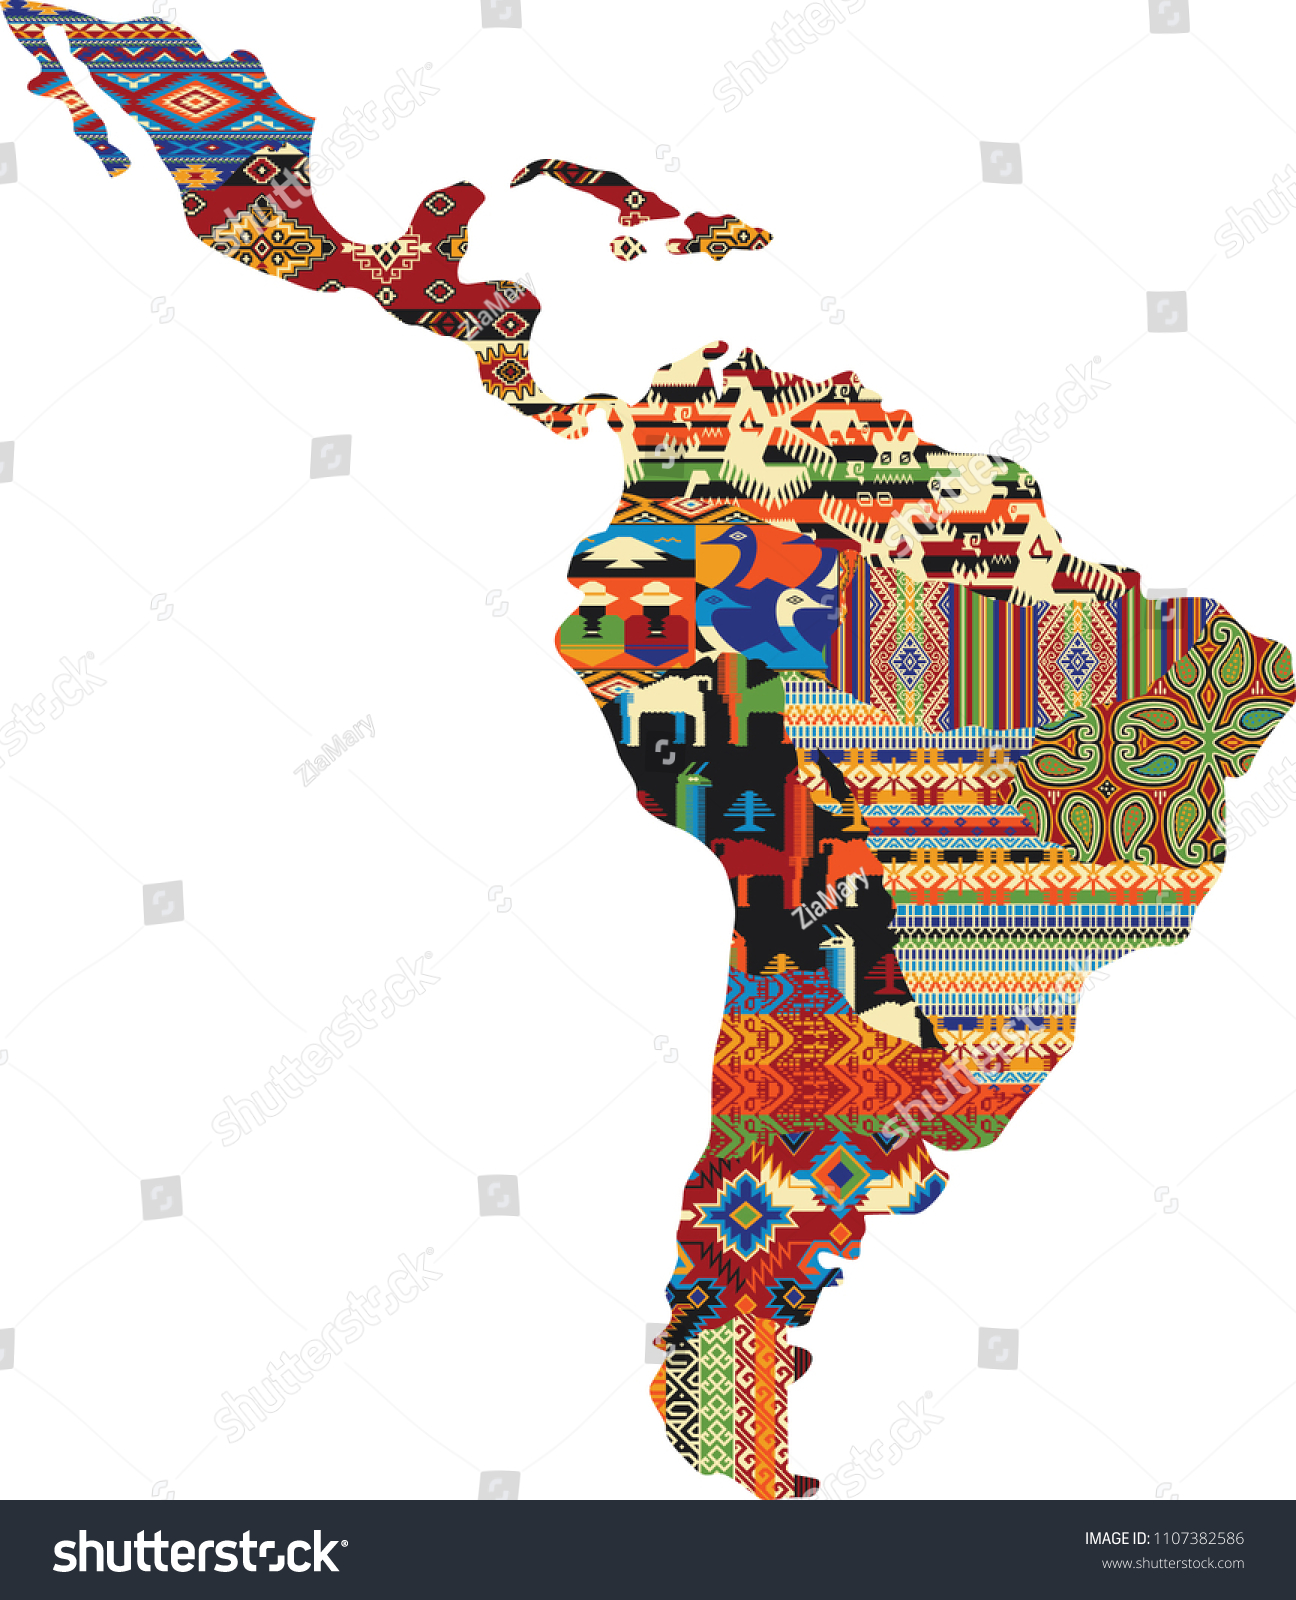 中南米のパッチワーク地図 ネイティブな布地パターンの抽象的ベクター画像壁紙 のベクター画像素材 ロイヤリティフリー